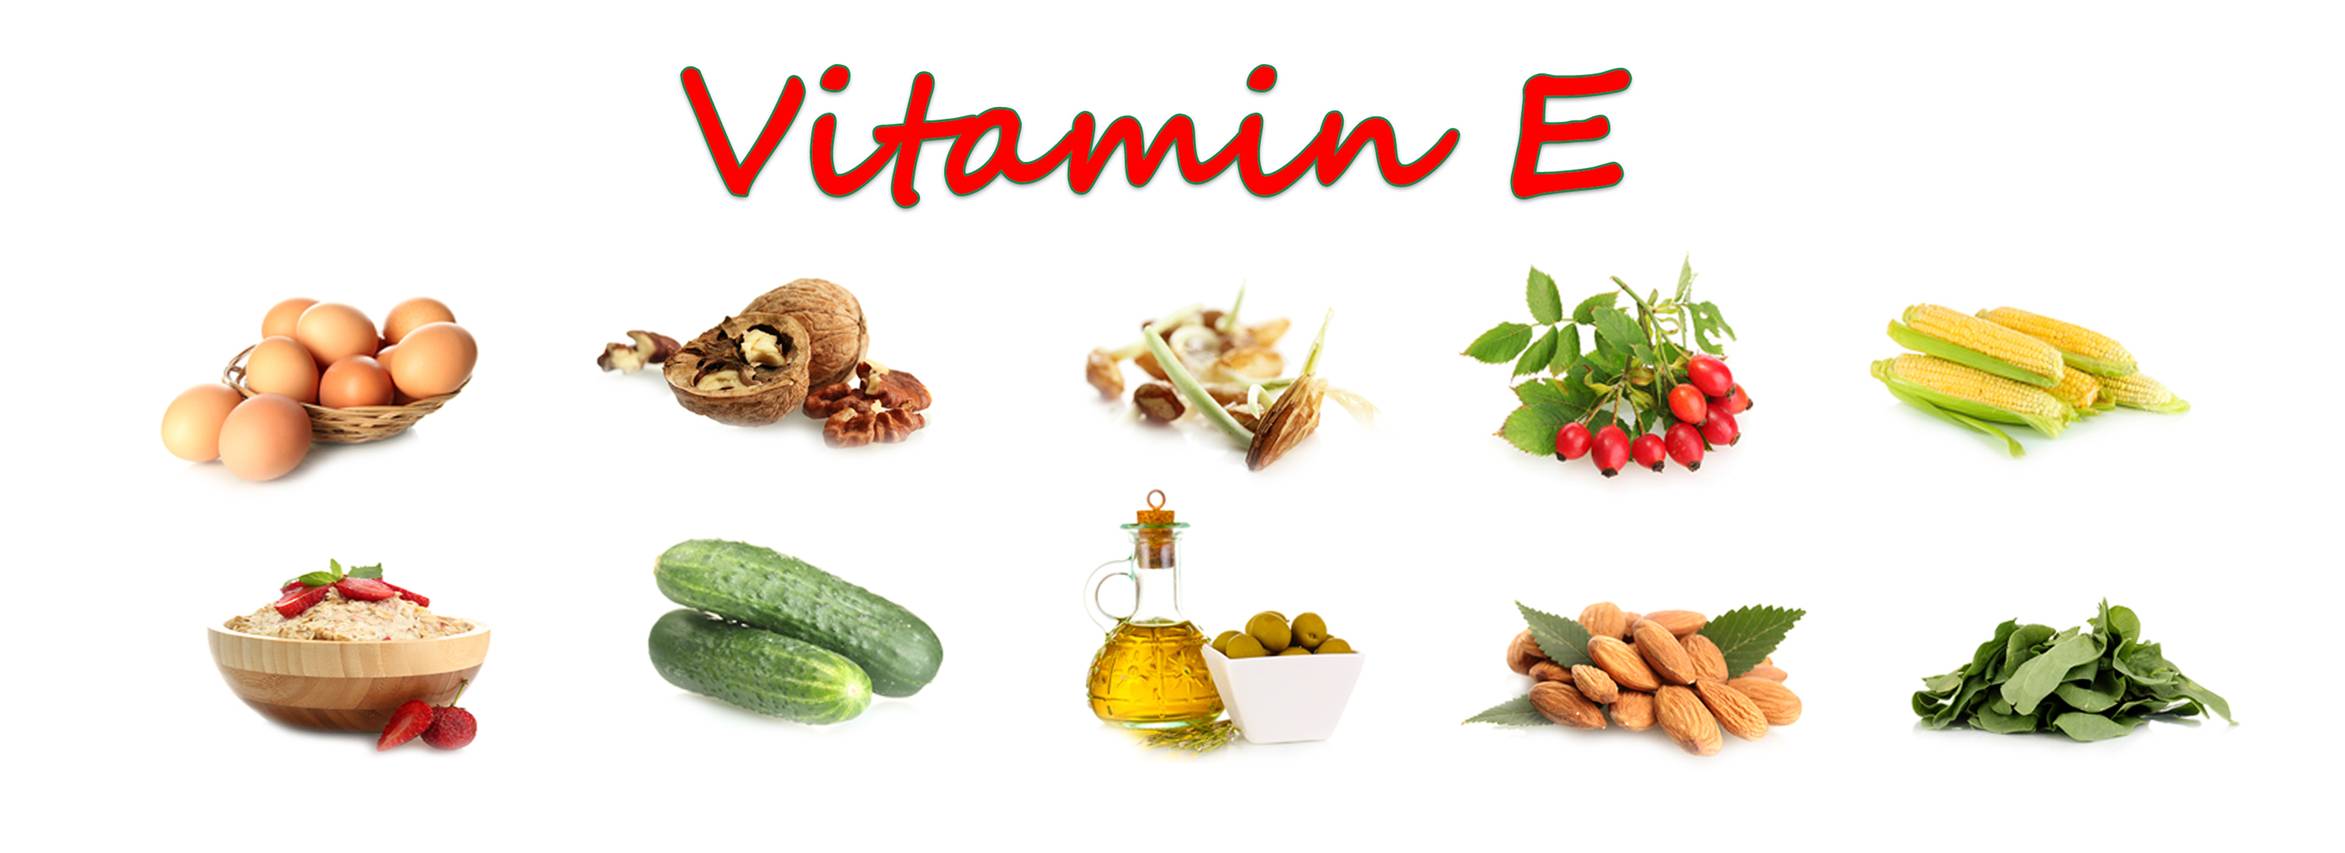 Витамин е: в каких продуктах содержится - таблица, где и в чём большое содержание токоферола